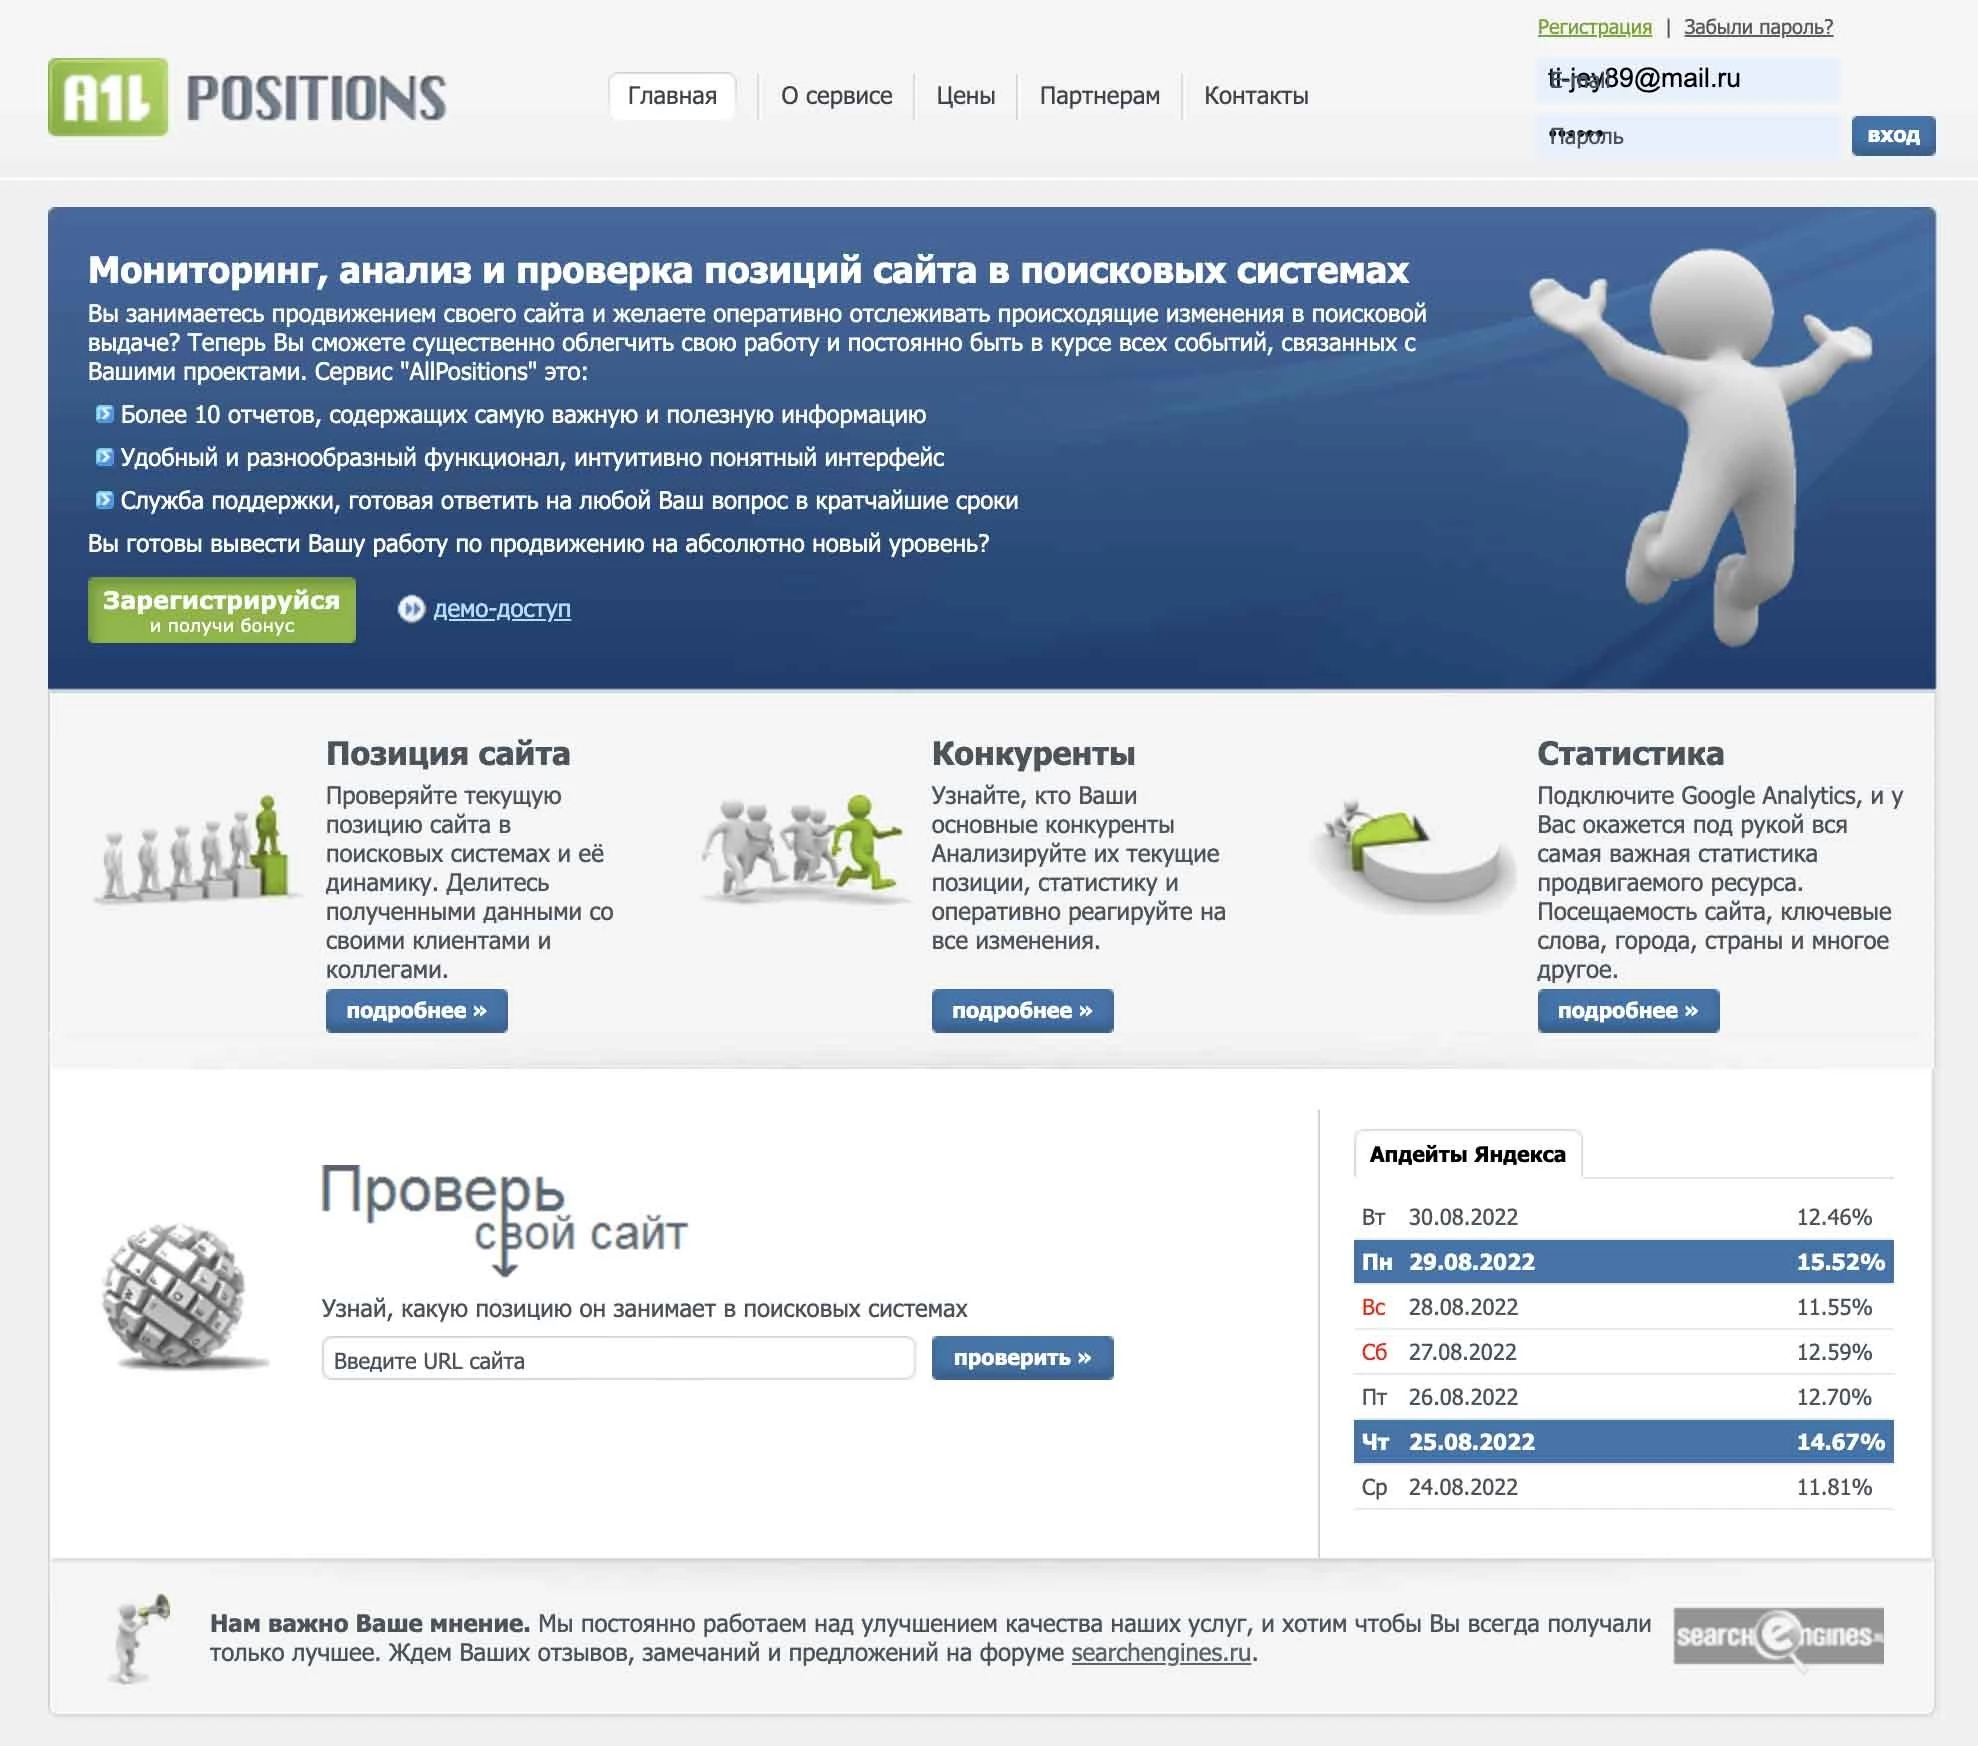 ALLPOSITIONS - мониторинг, анализ и проверка позиций сайта в поисковых системах